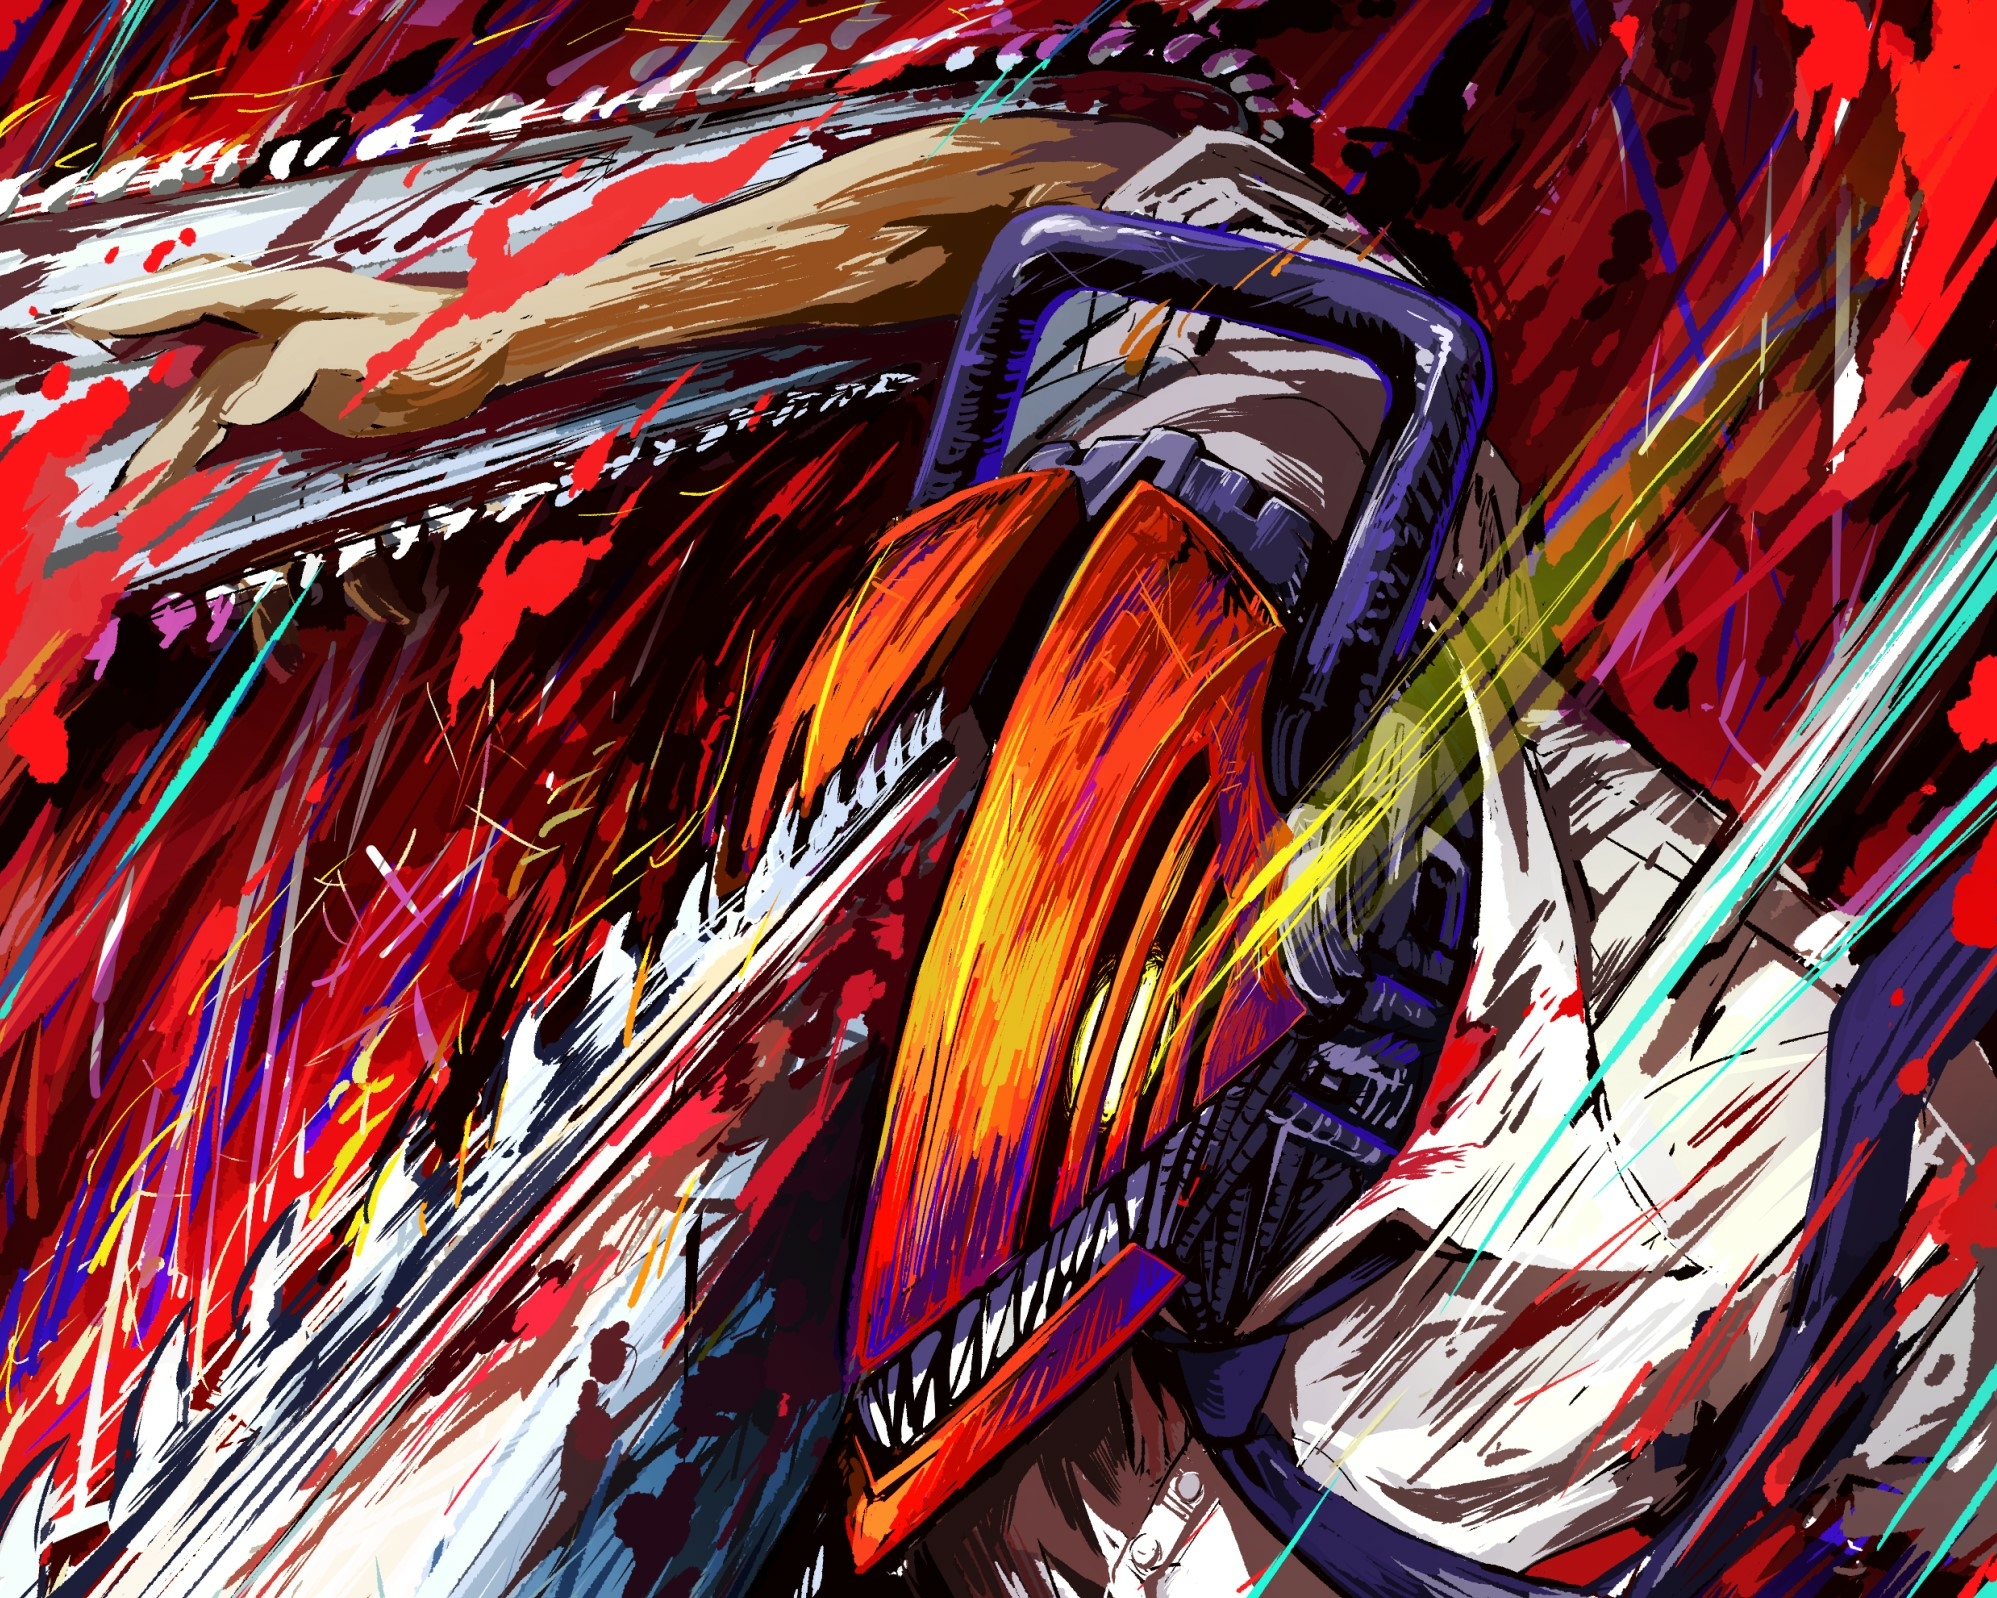 1920x10801148 Anime Chainsaw Man Hd Colourful Denji 1920x10801148 Resolution Wallpaper Hd Anime 1166